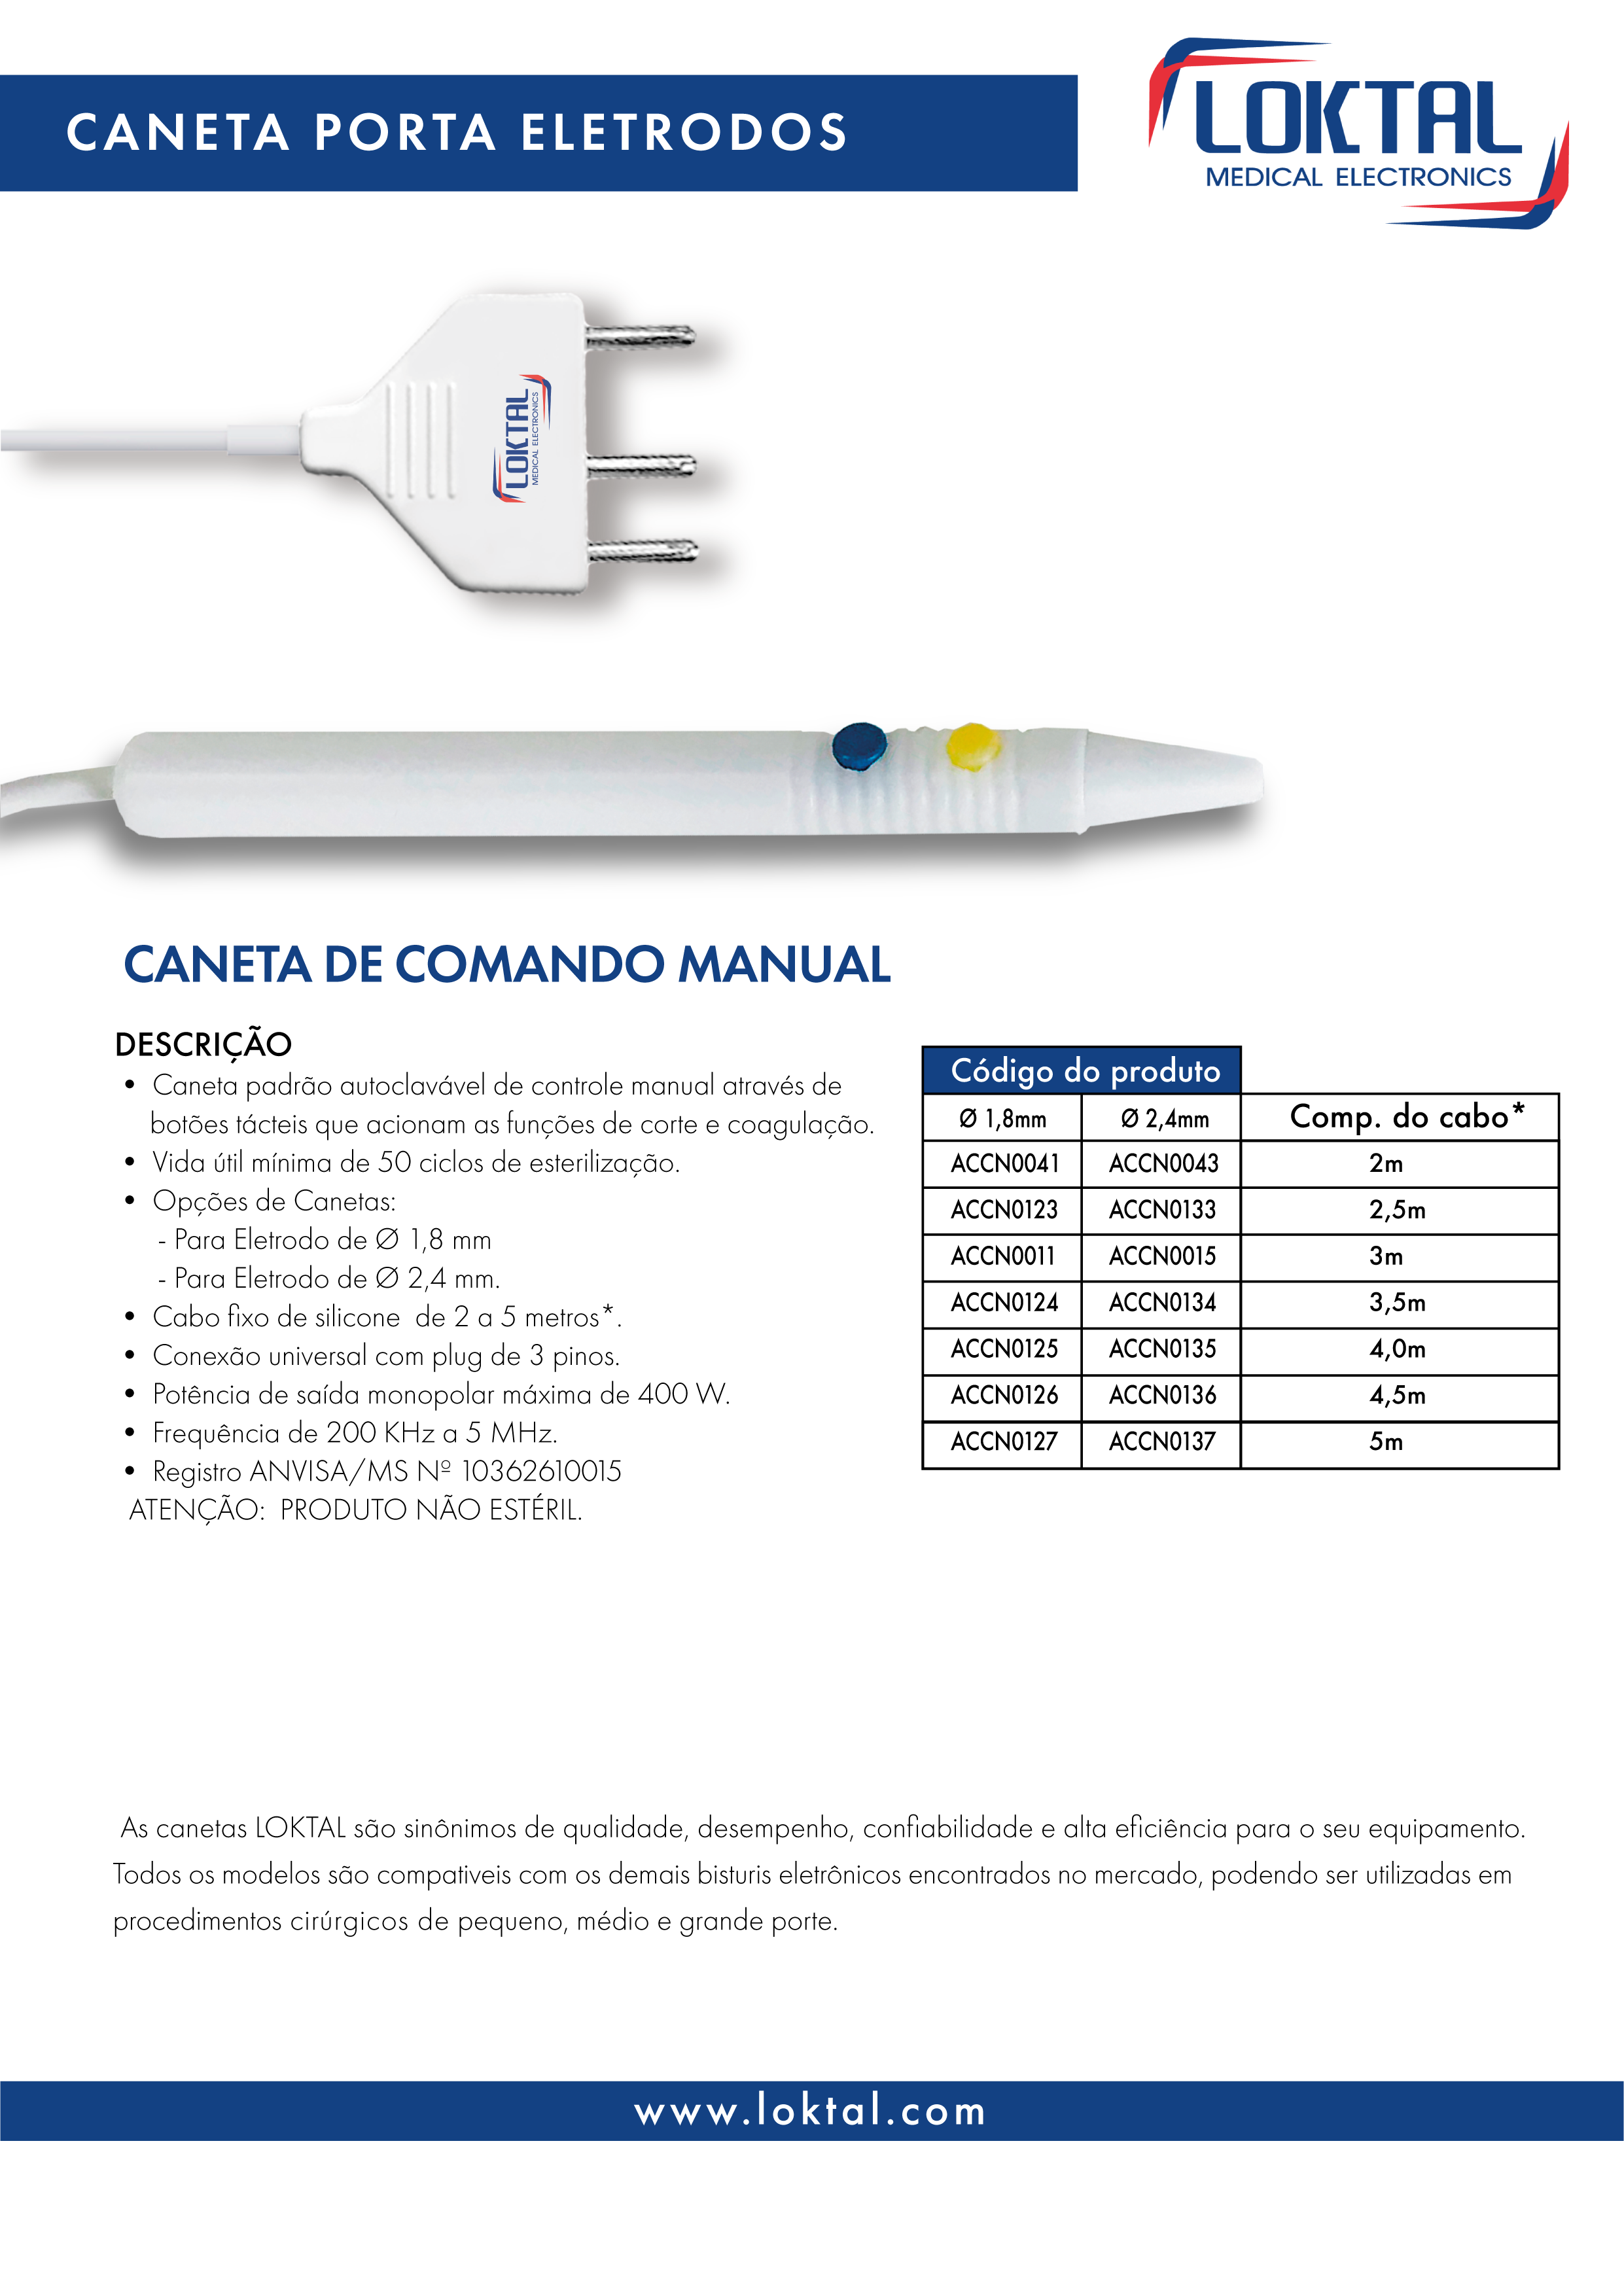 ACCN0011 - Caneta porta eletrodos comando manual autoclavável - PLUG18 - 3 m